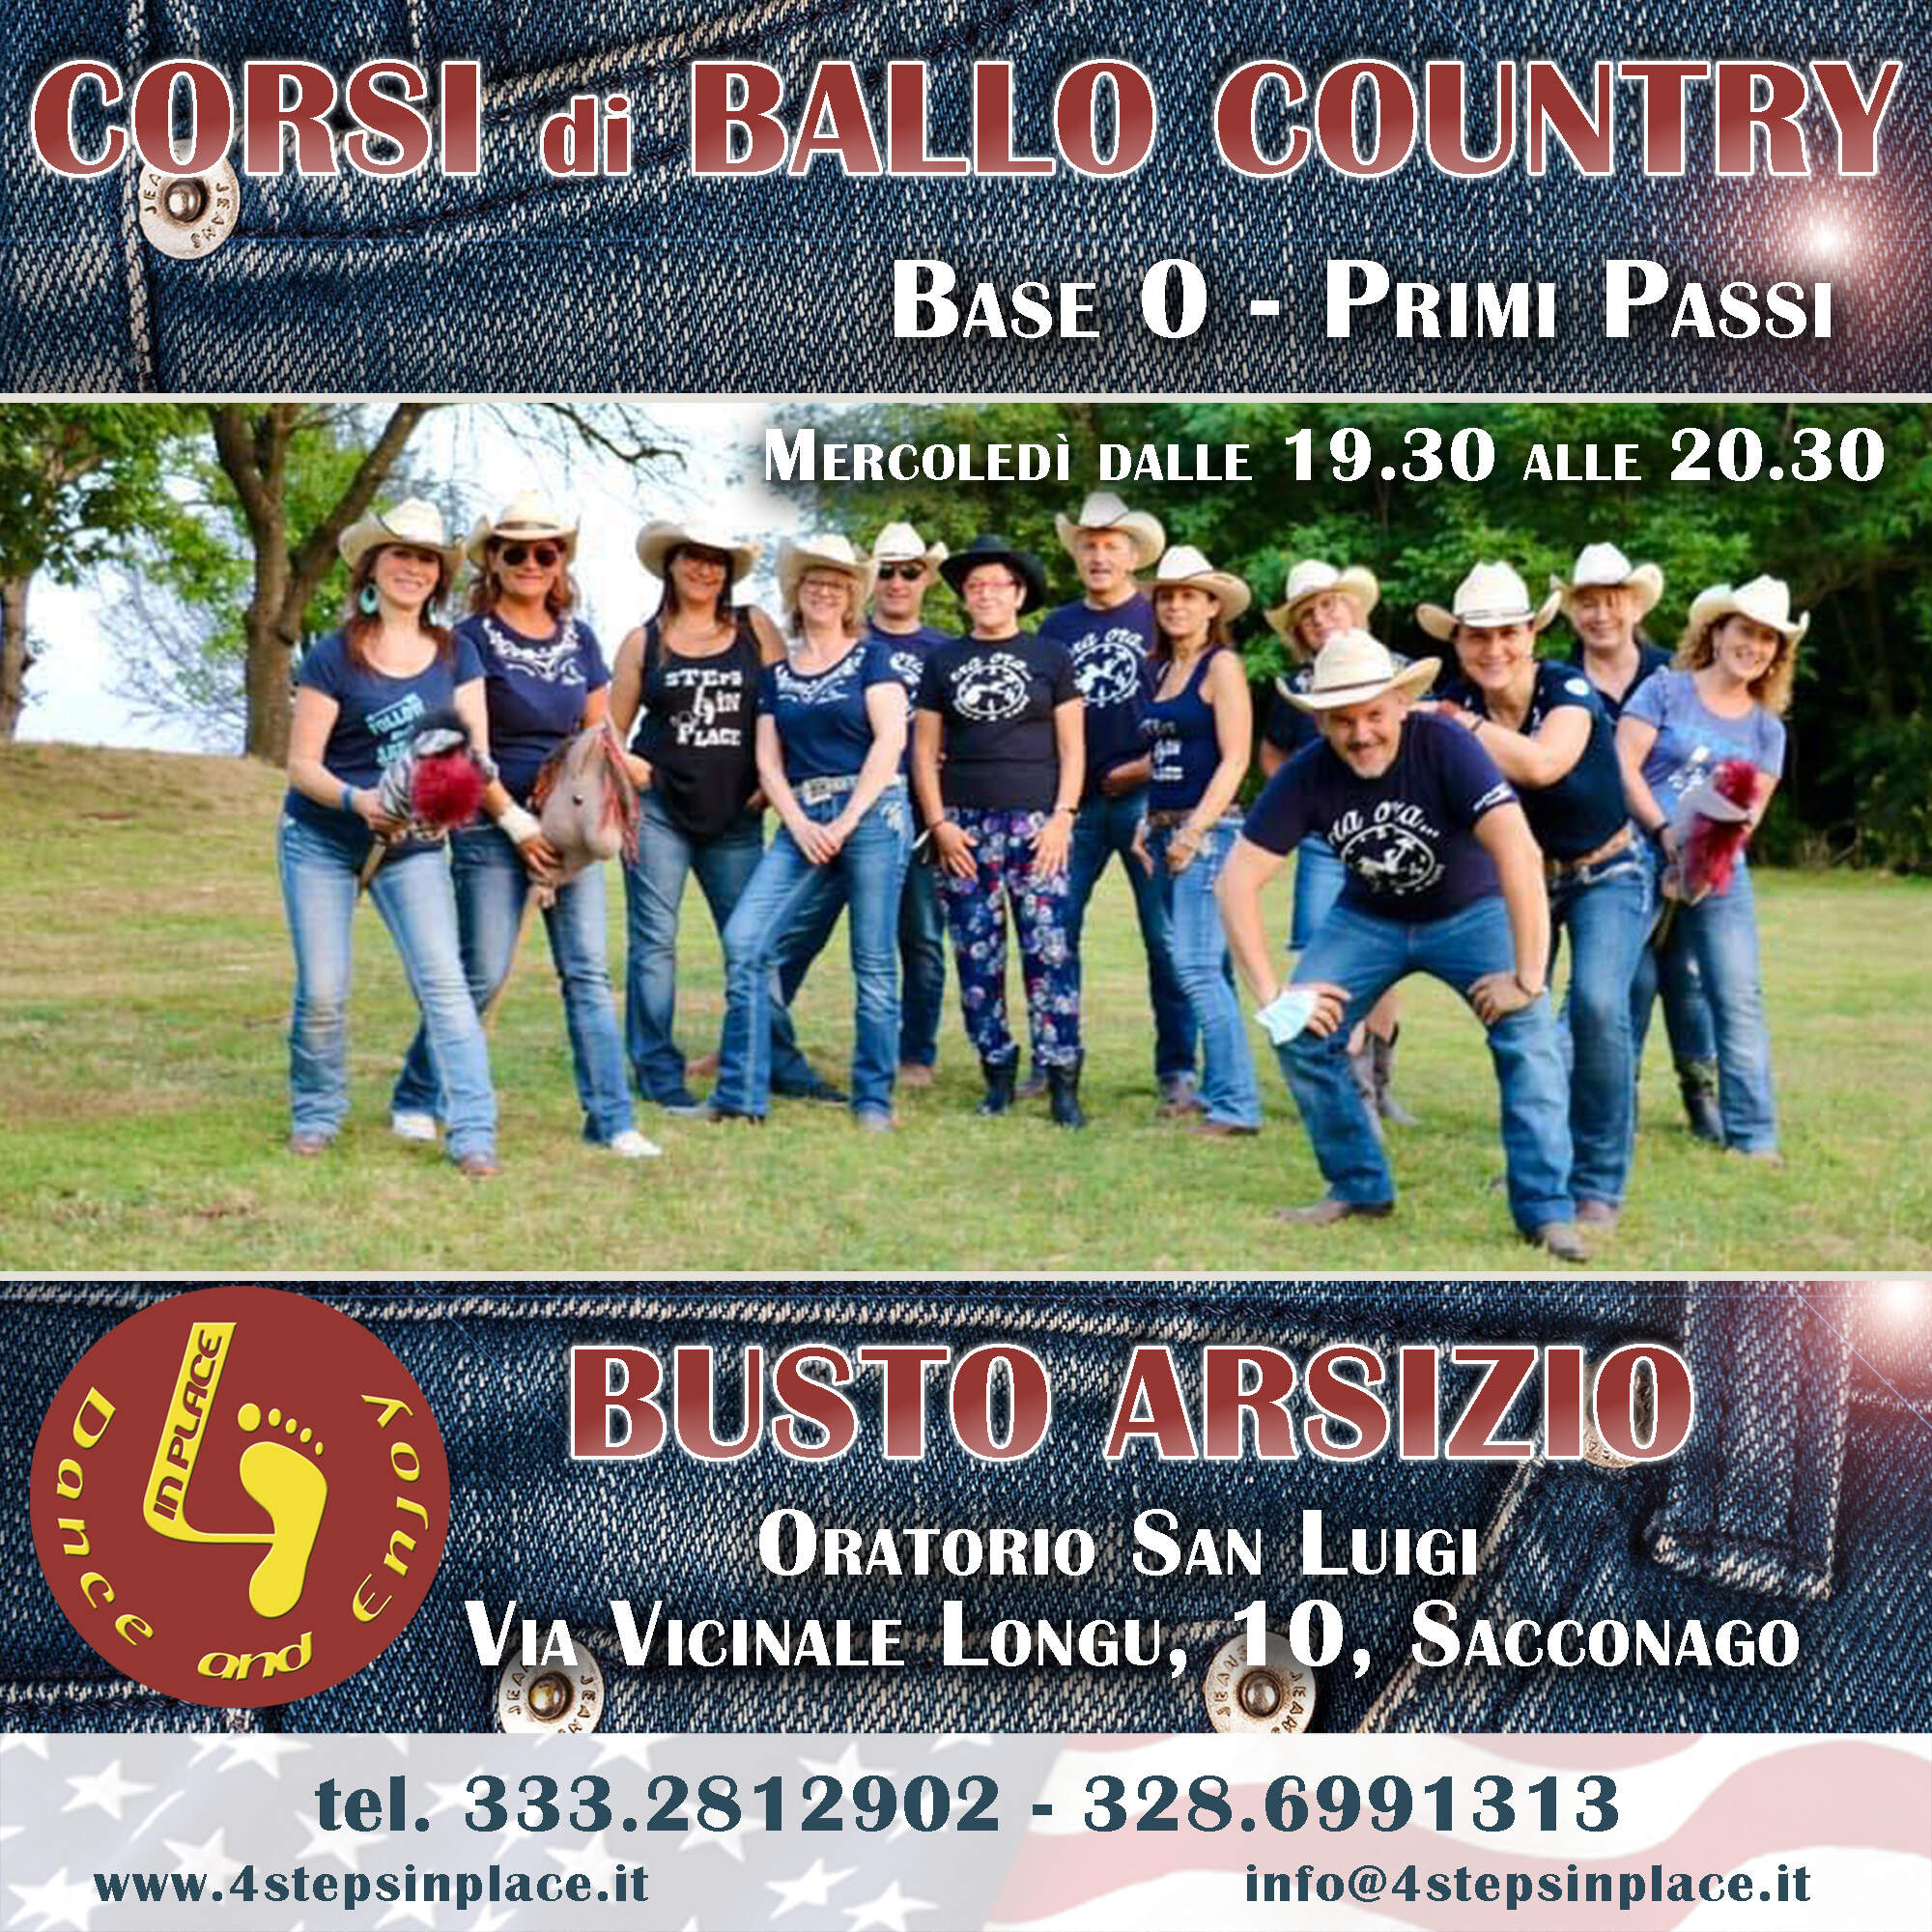 NUOVISSIMO CORSO Ballo Country Base 0 - Primi Passi a Busto Arsizio!!